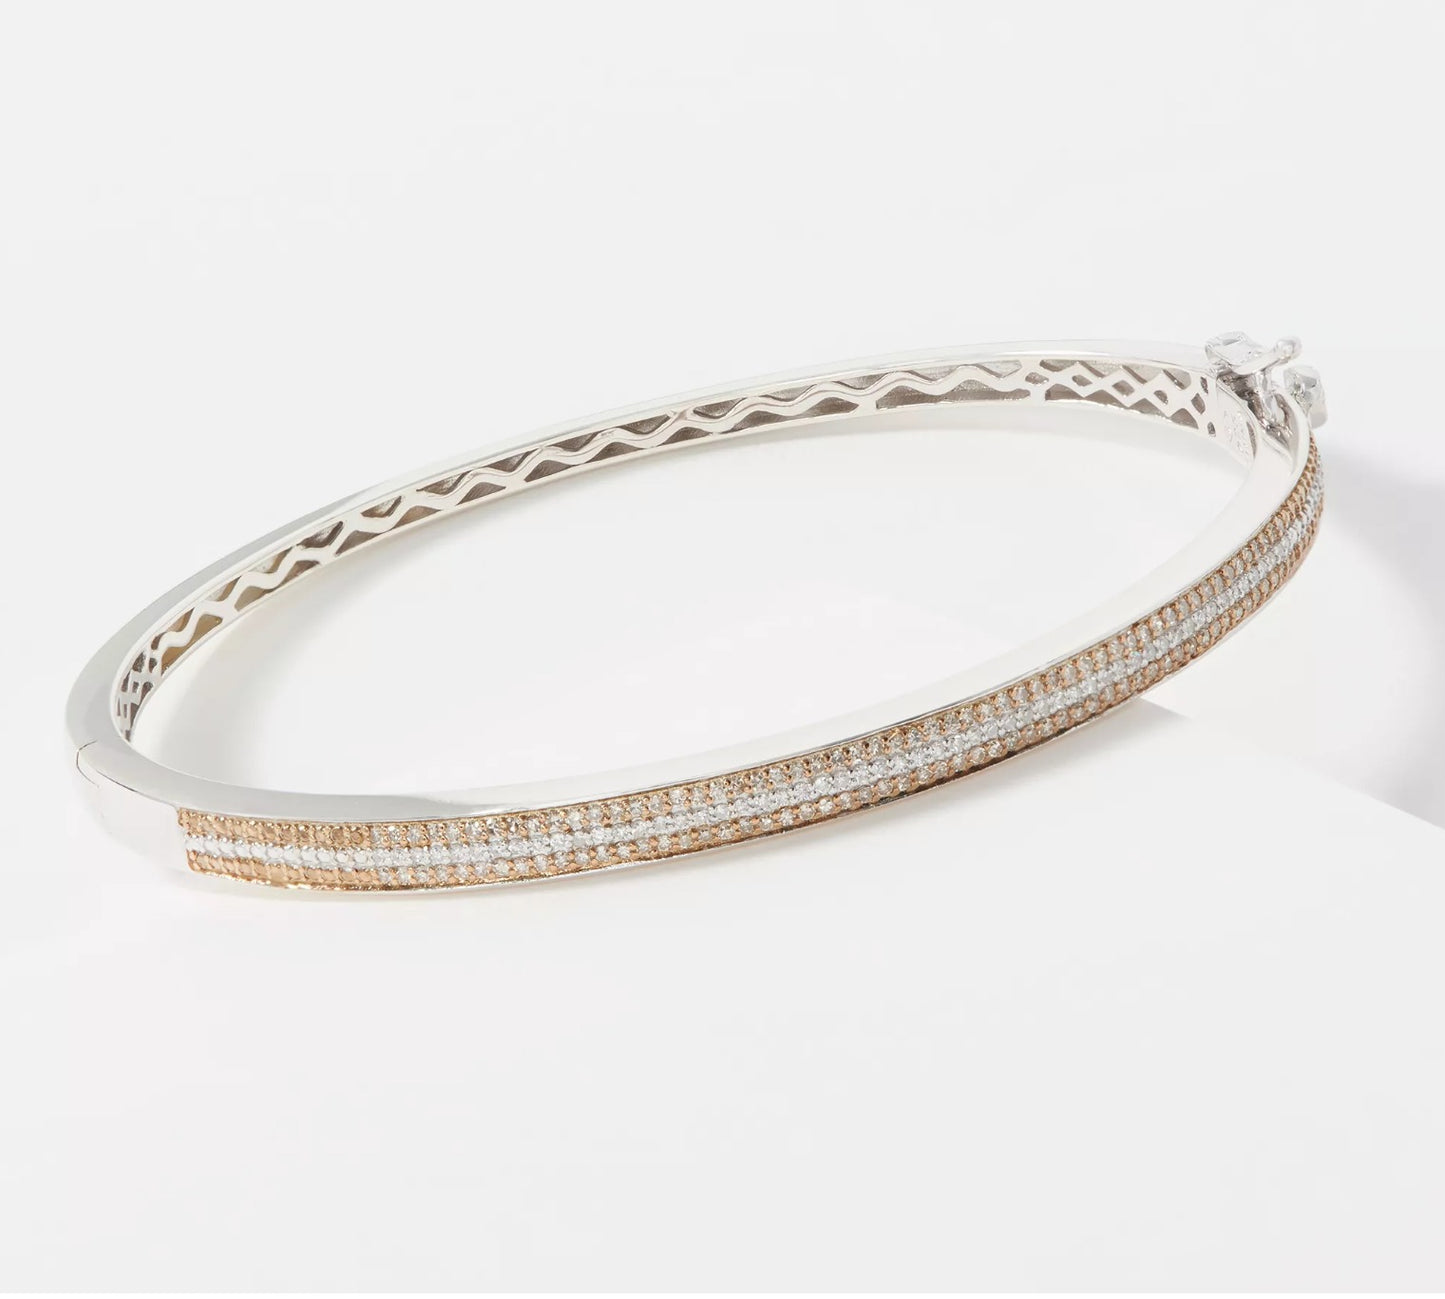 Affinity Sterling Silver Diamond Bangle Bracelet. 6-3/4"